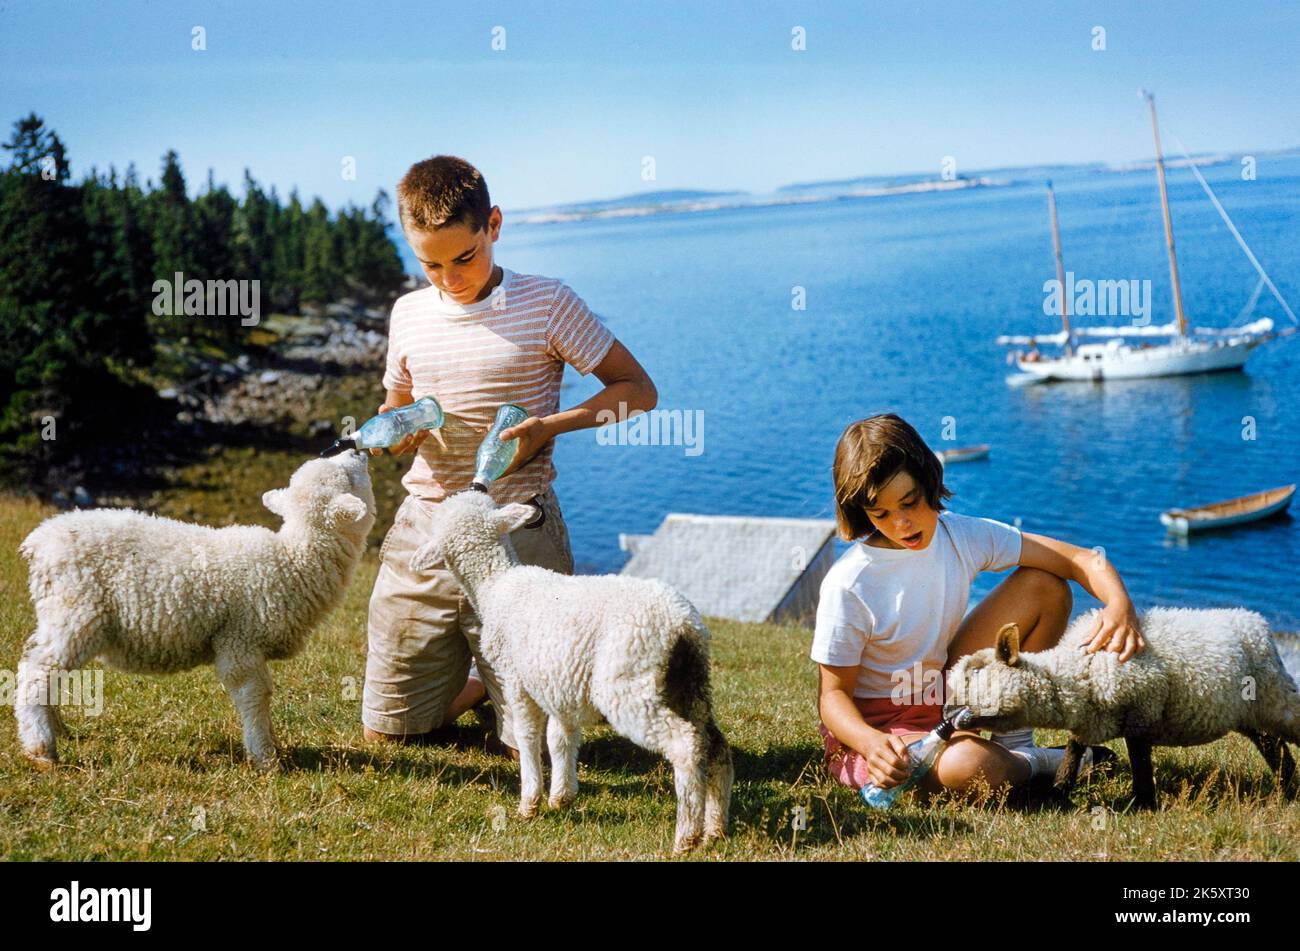 Agnelli per l'alimentazione di giovani ragazzi e ragazze, Mount Desert Island, Maine, USA, toni Frissell Collection, Foto Stock